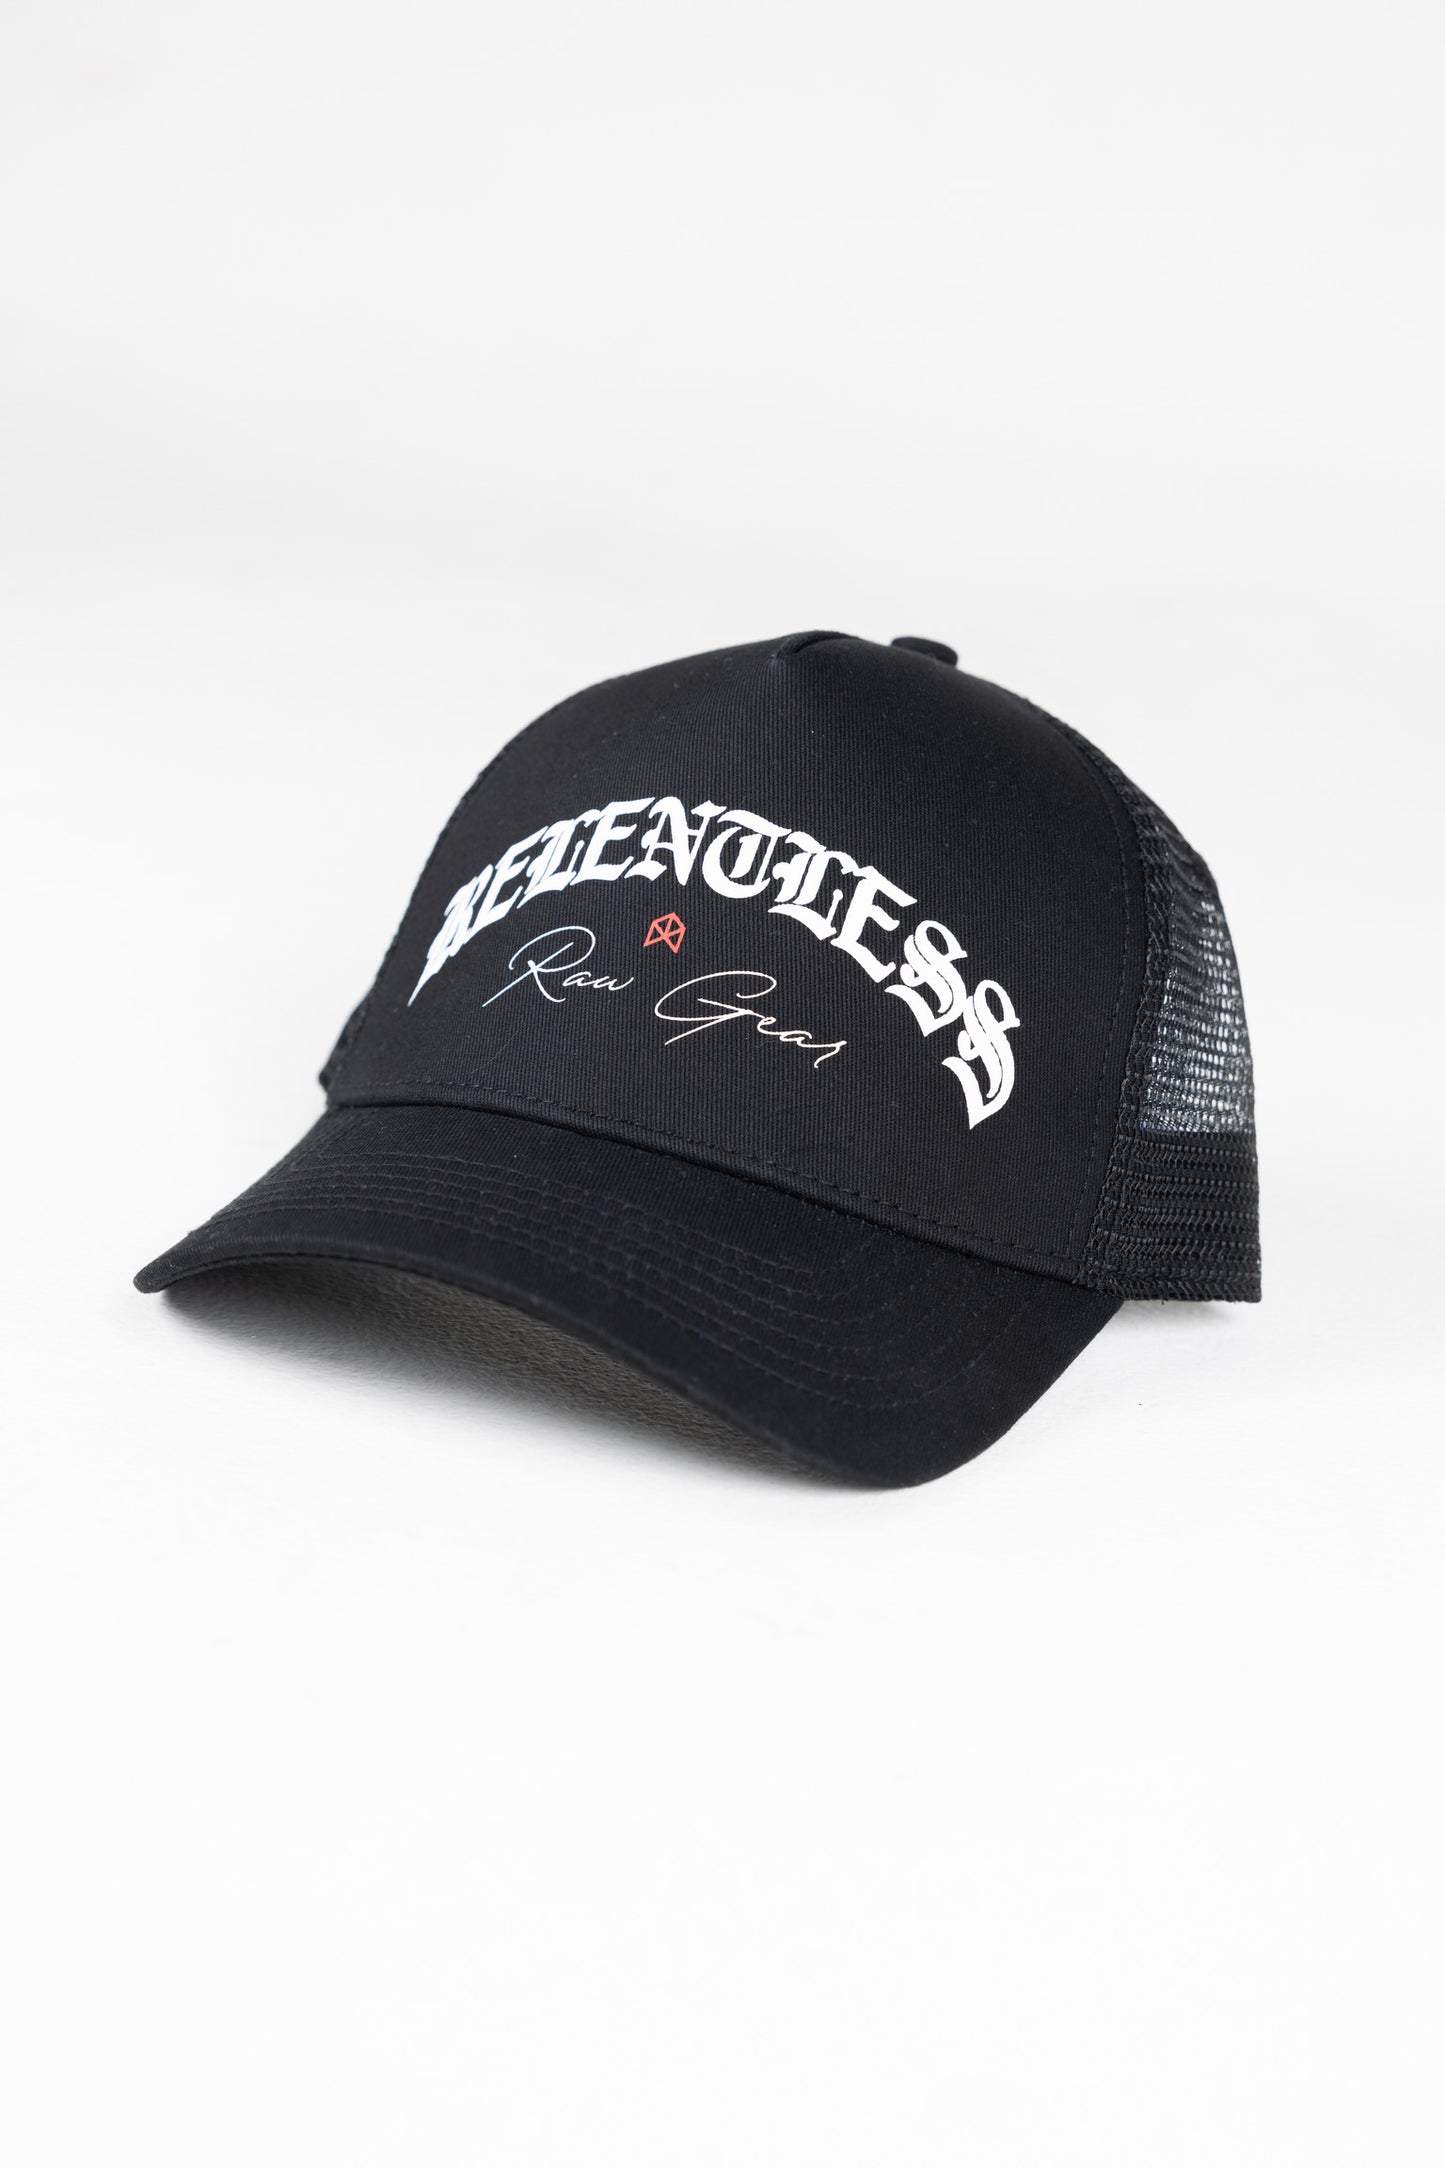 Relentless Trucker Hat